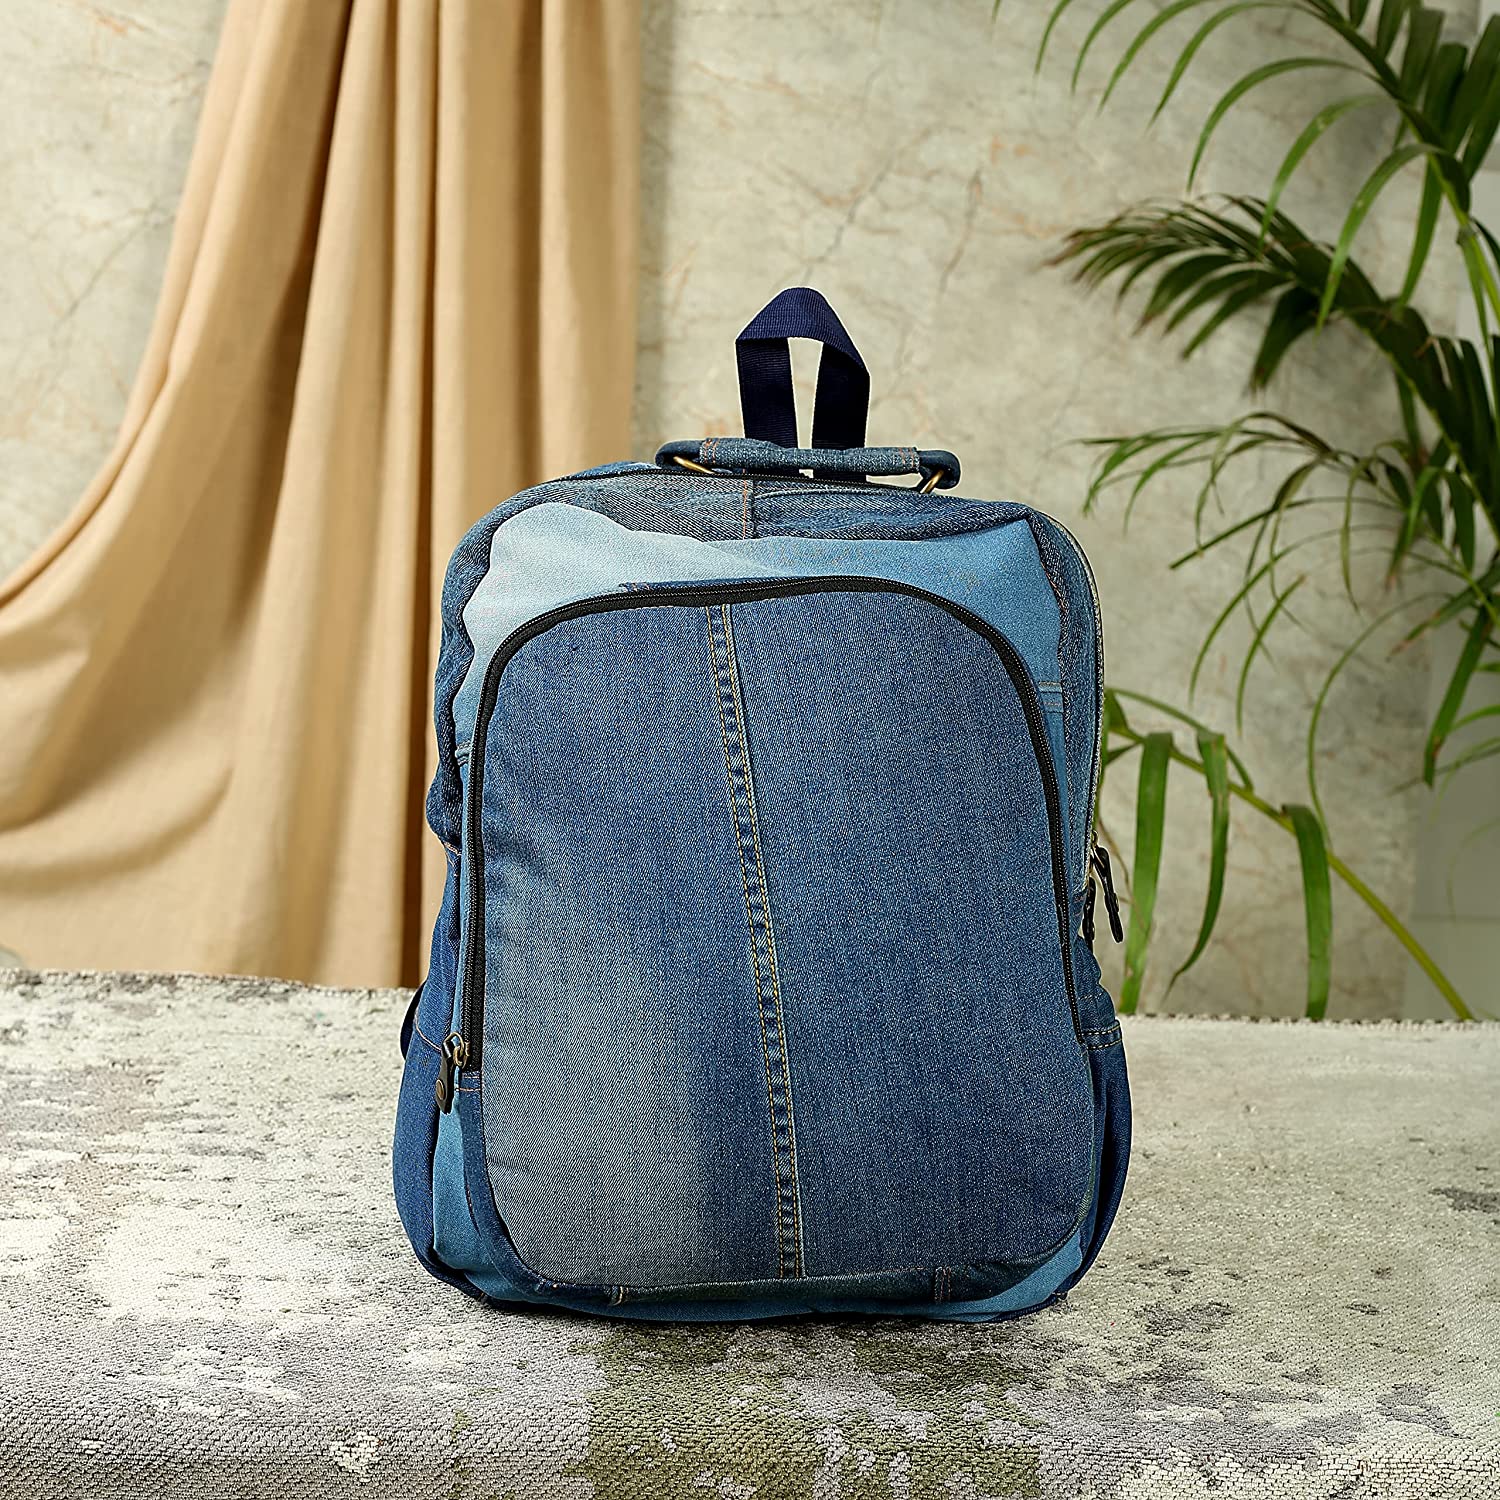 Denim Backpack, Jeans Backpack, Jean Bag, Recycled Jeans, Vintage Bag,  Bohemian Bag, Recycled Jeans Bag, Denim Handbag, Jeans Handbags, Gift -  Etsy | Jeans bag, Recycled jeans bag, Denim backpack